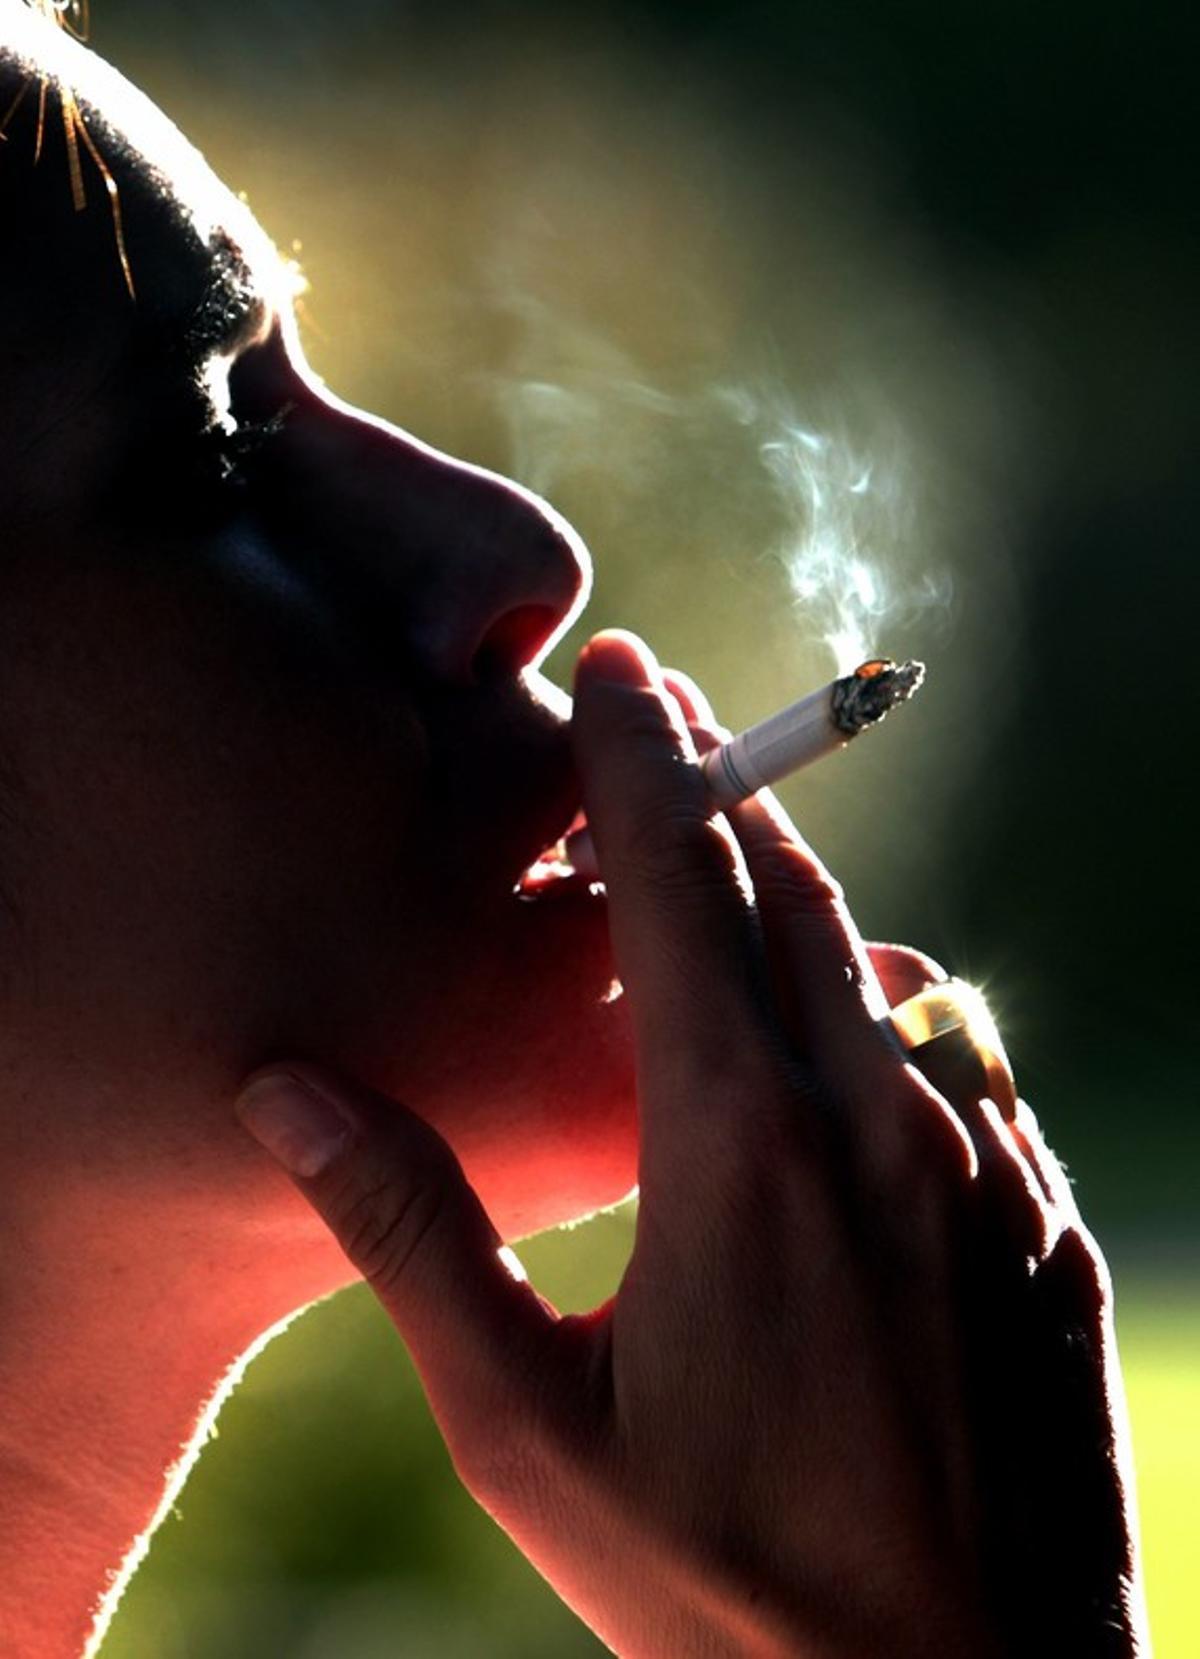  Una mujer fuma un cigarrillo, en una imagen de archivo.